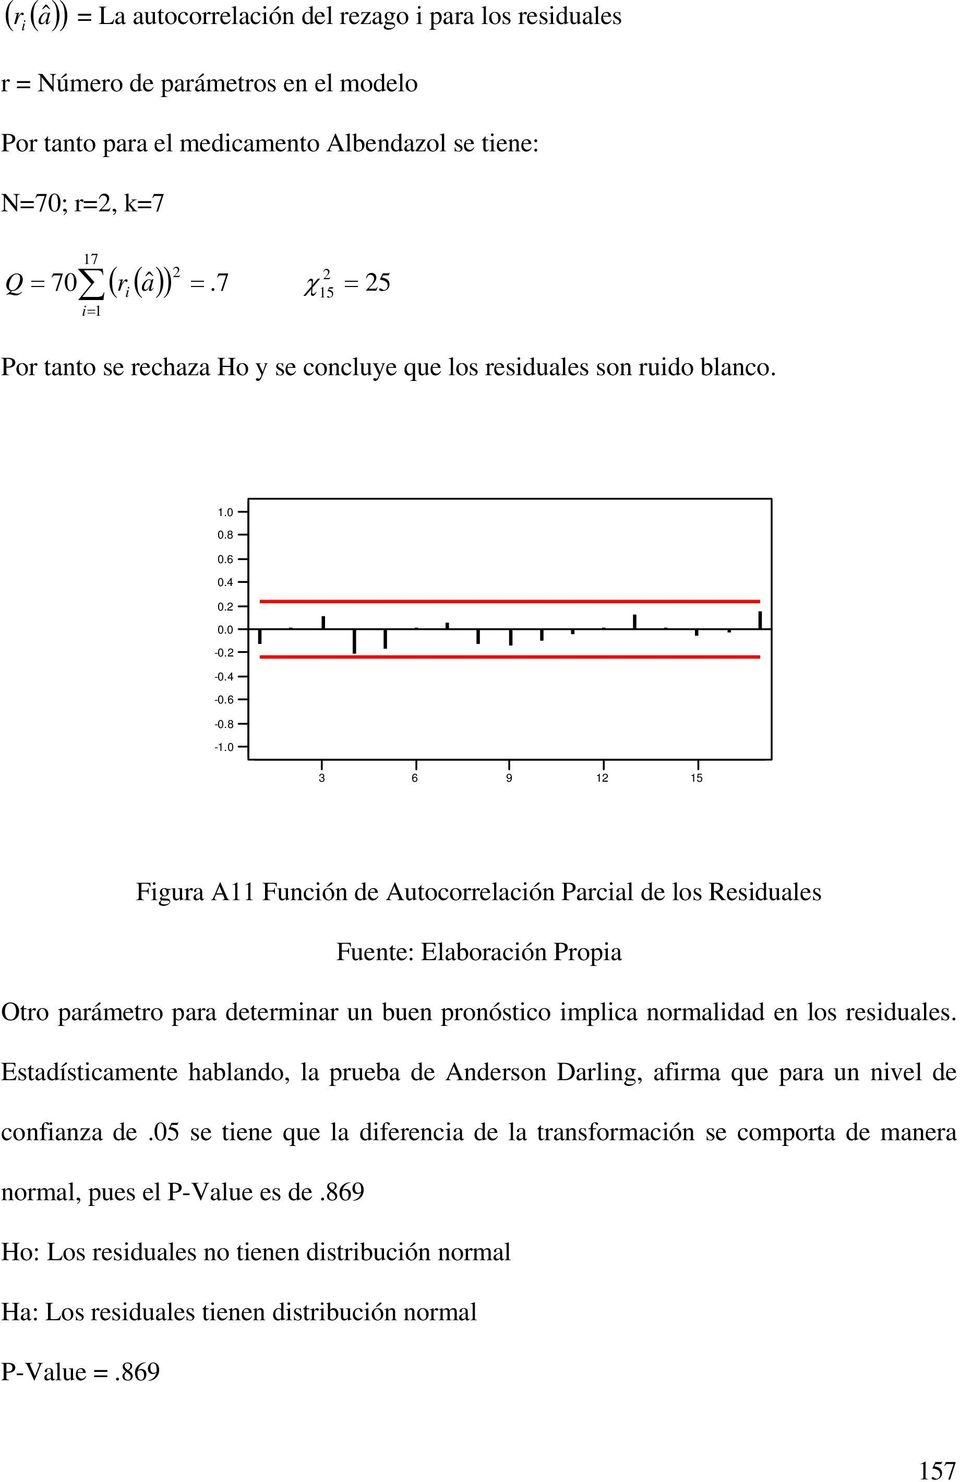 - - - 3 6 9 5 Figura A Función de Autocorrelación Parcial de los Residuales Otro parámetro para determinar un buen pronóstico implica normalidad en los residuales.